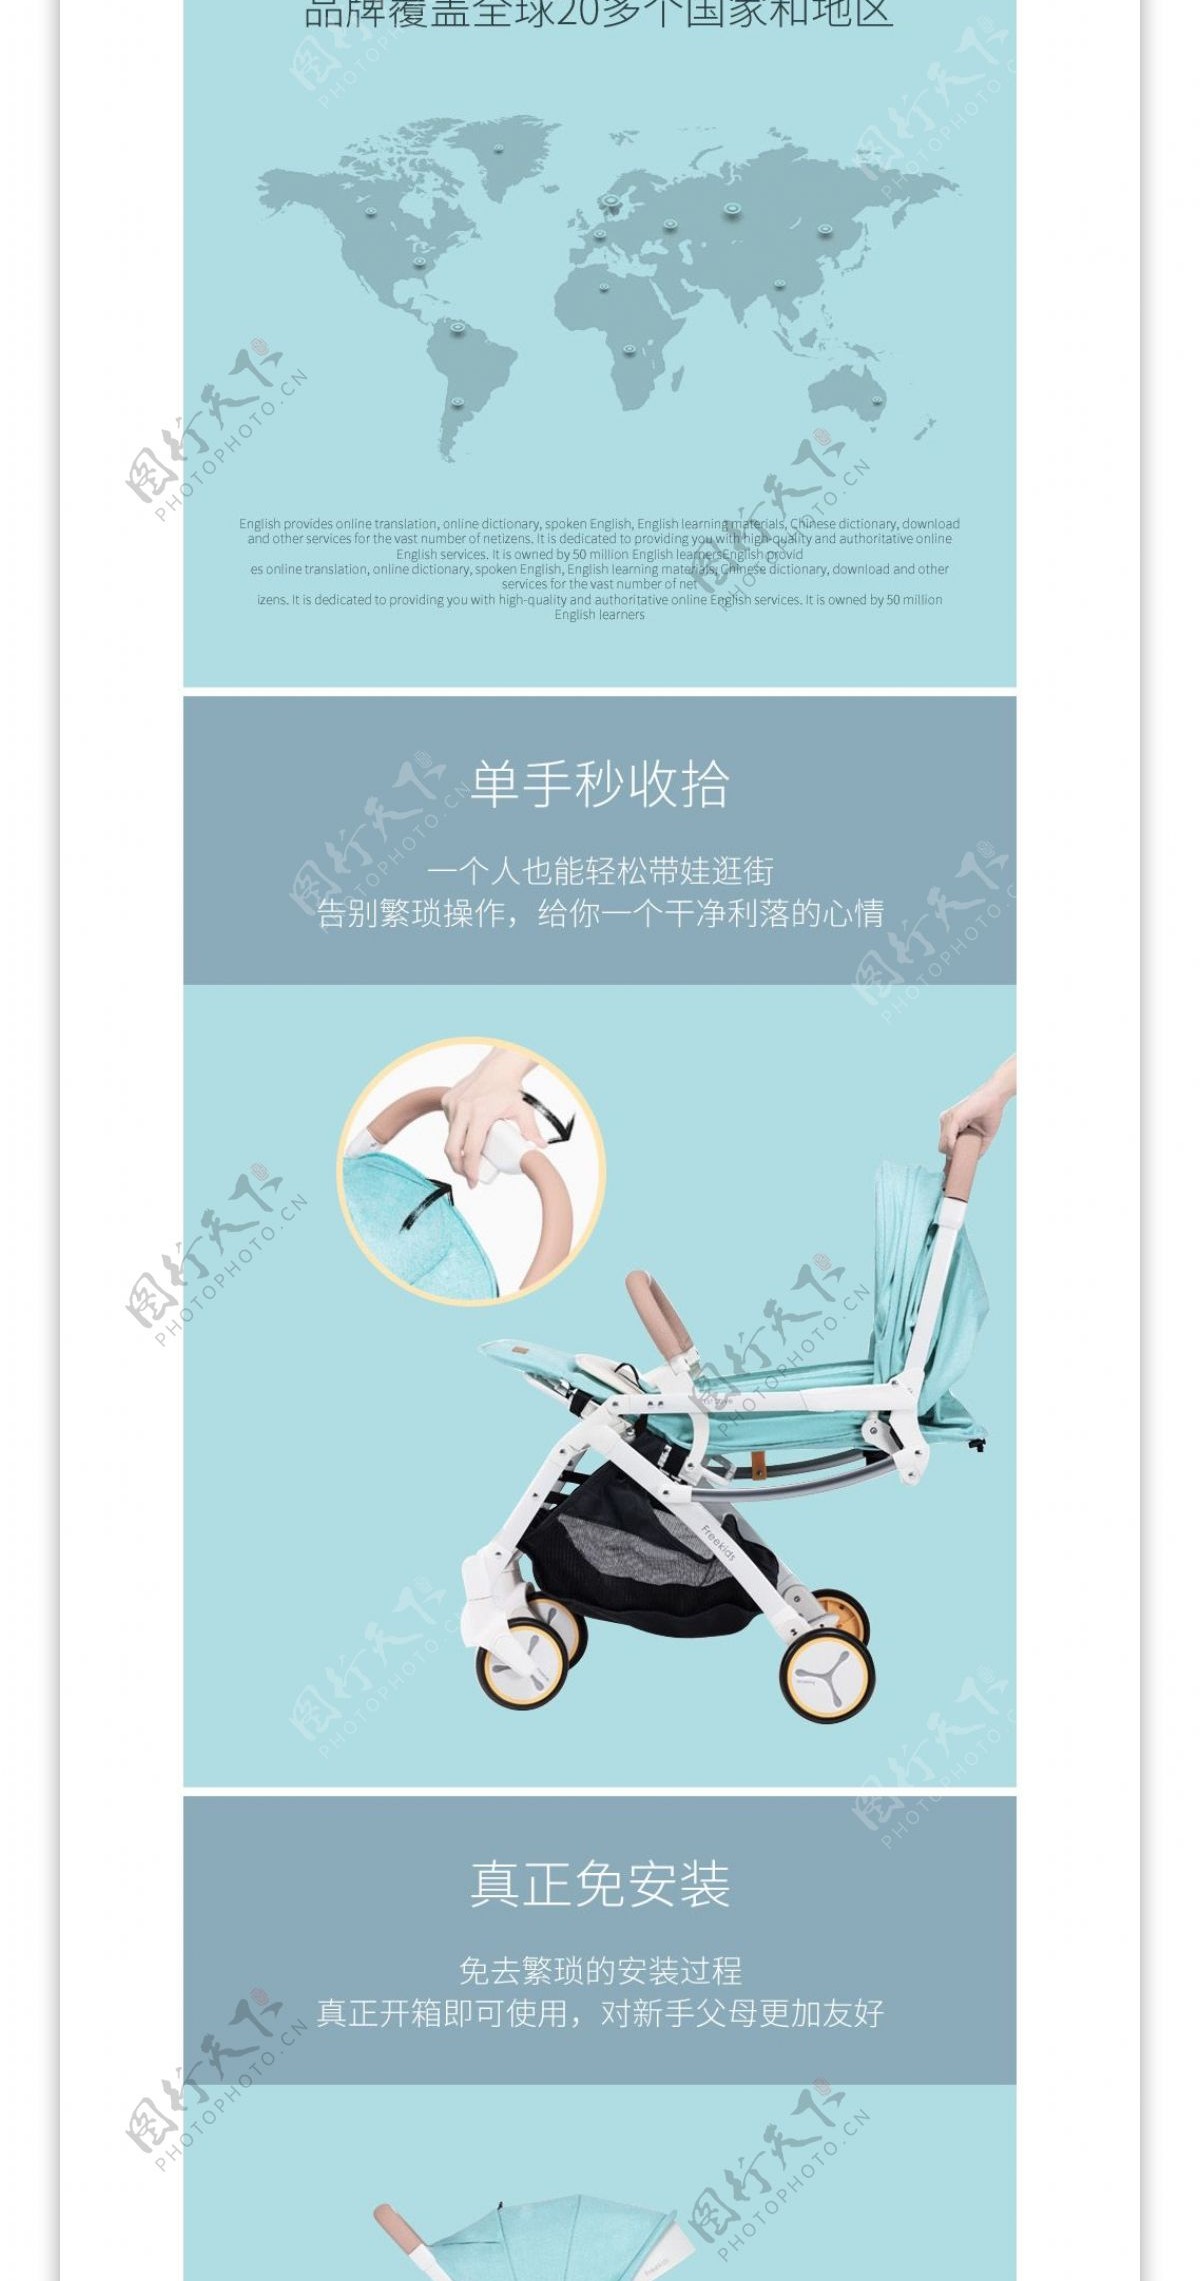 天猫淘宝母婴用品婴儿车详情页婴儿推车